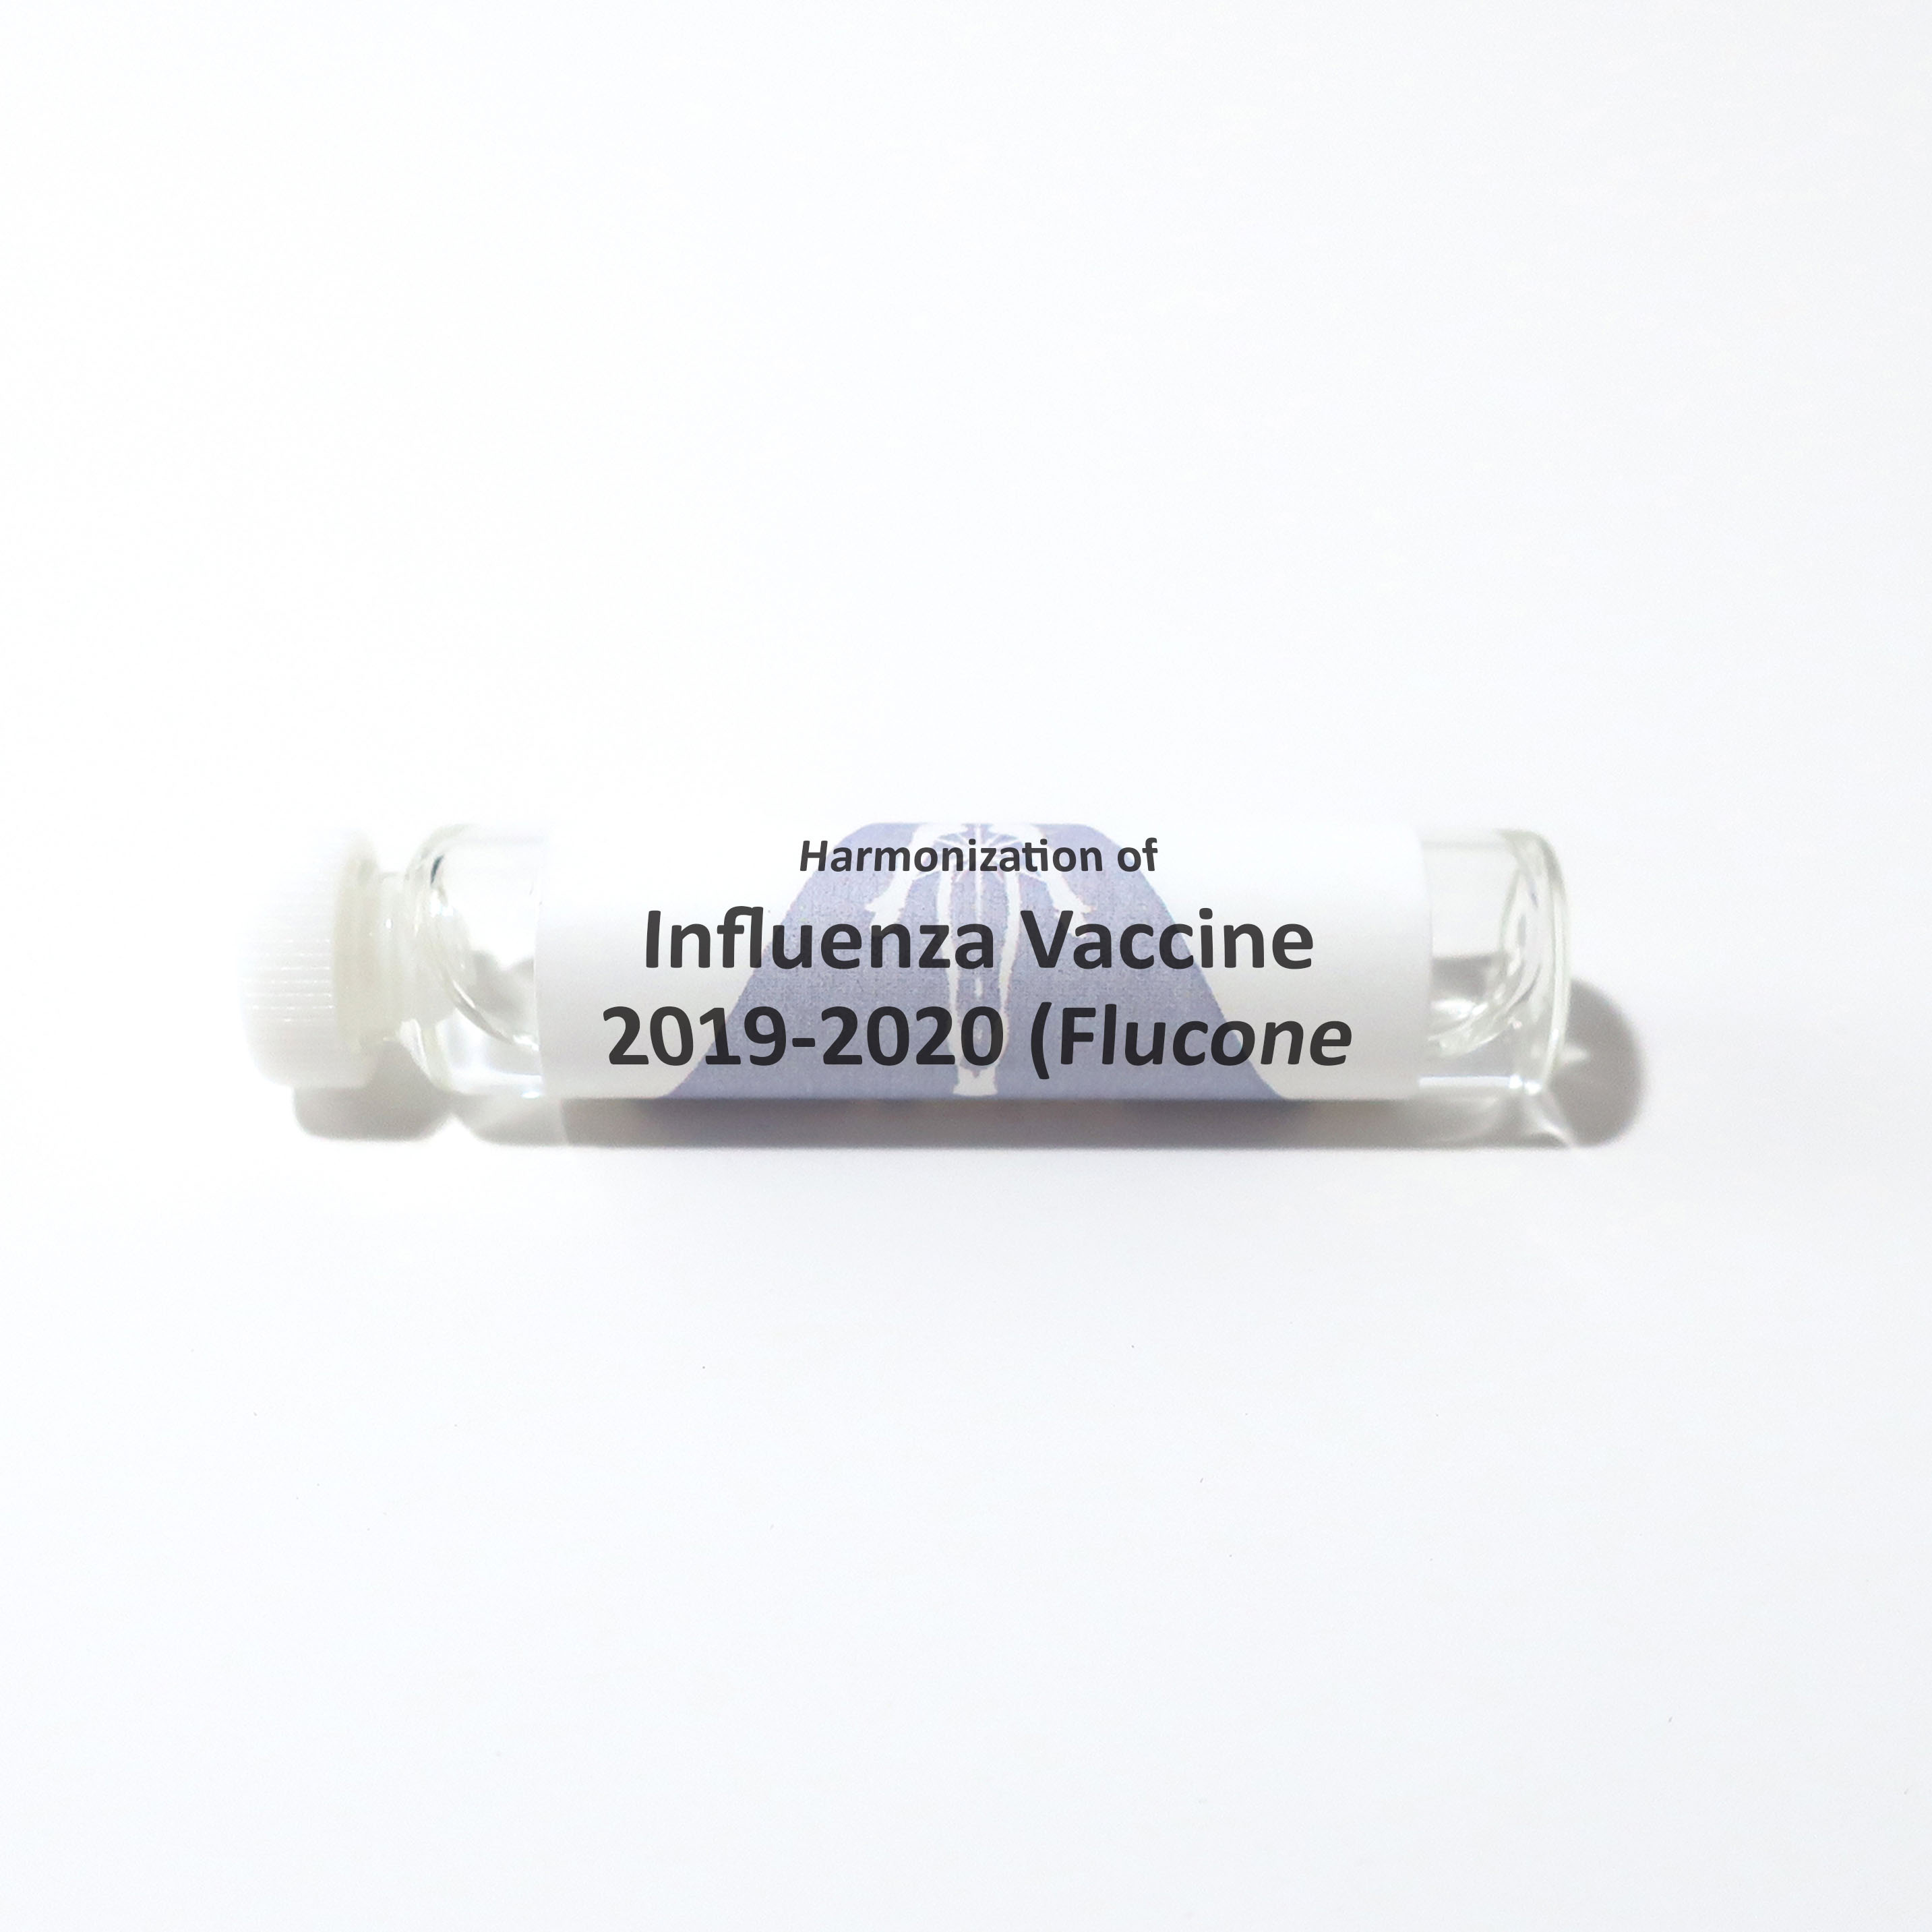 Influenza Vaccine 2019-2020 (Flucone Quadrivalent)